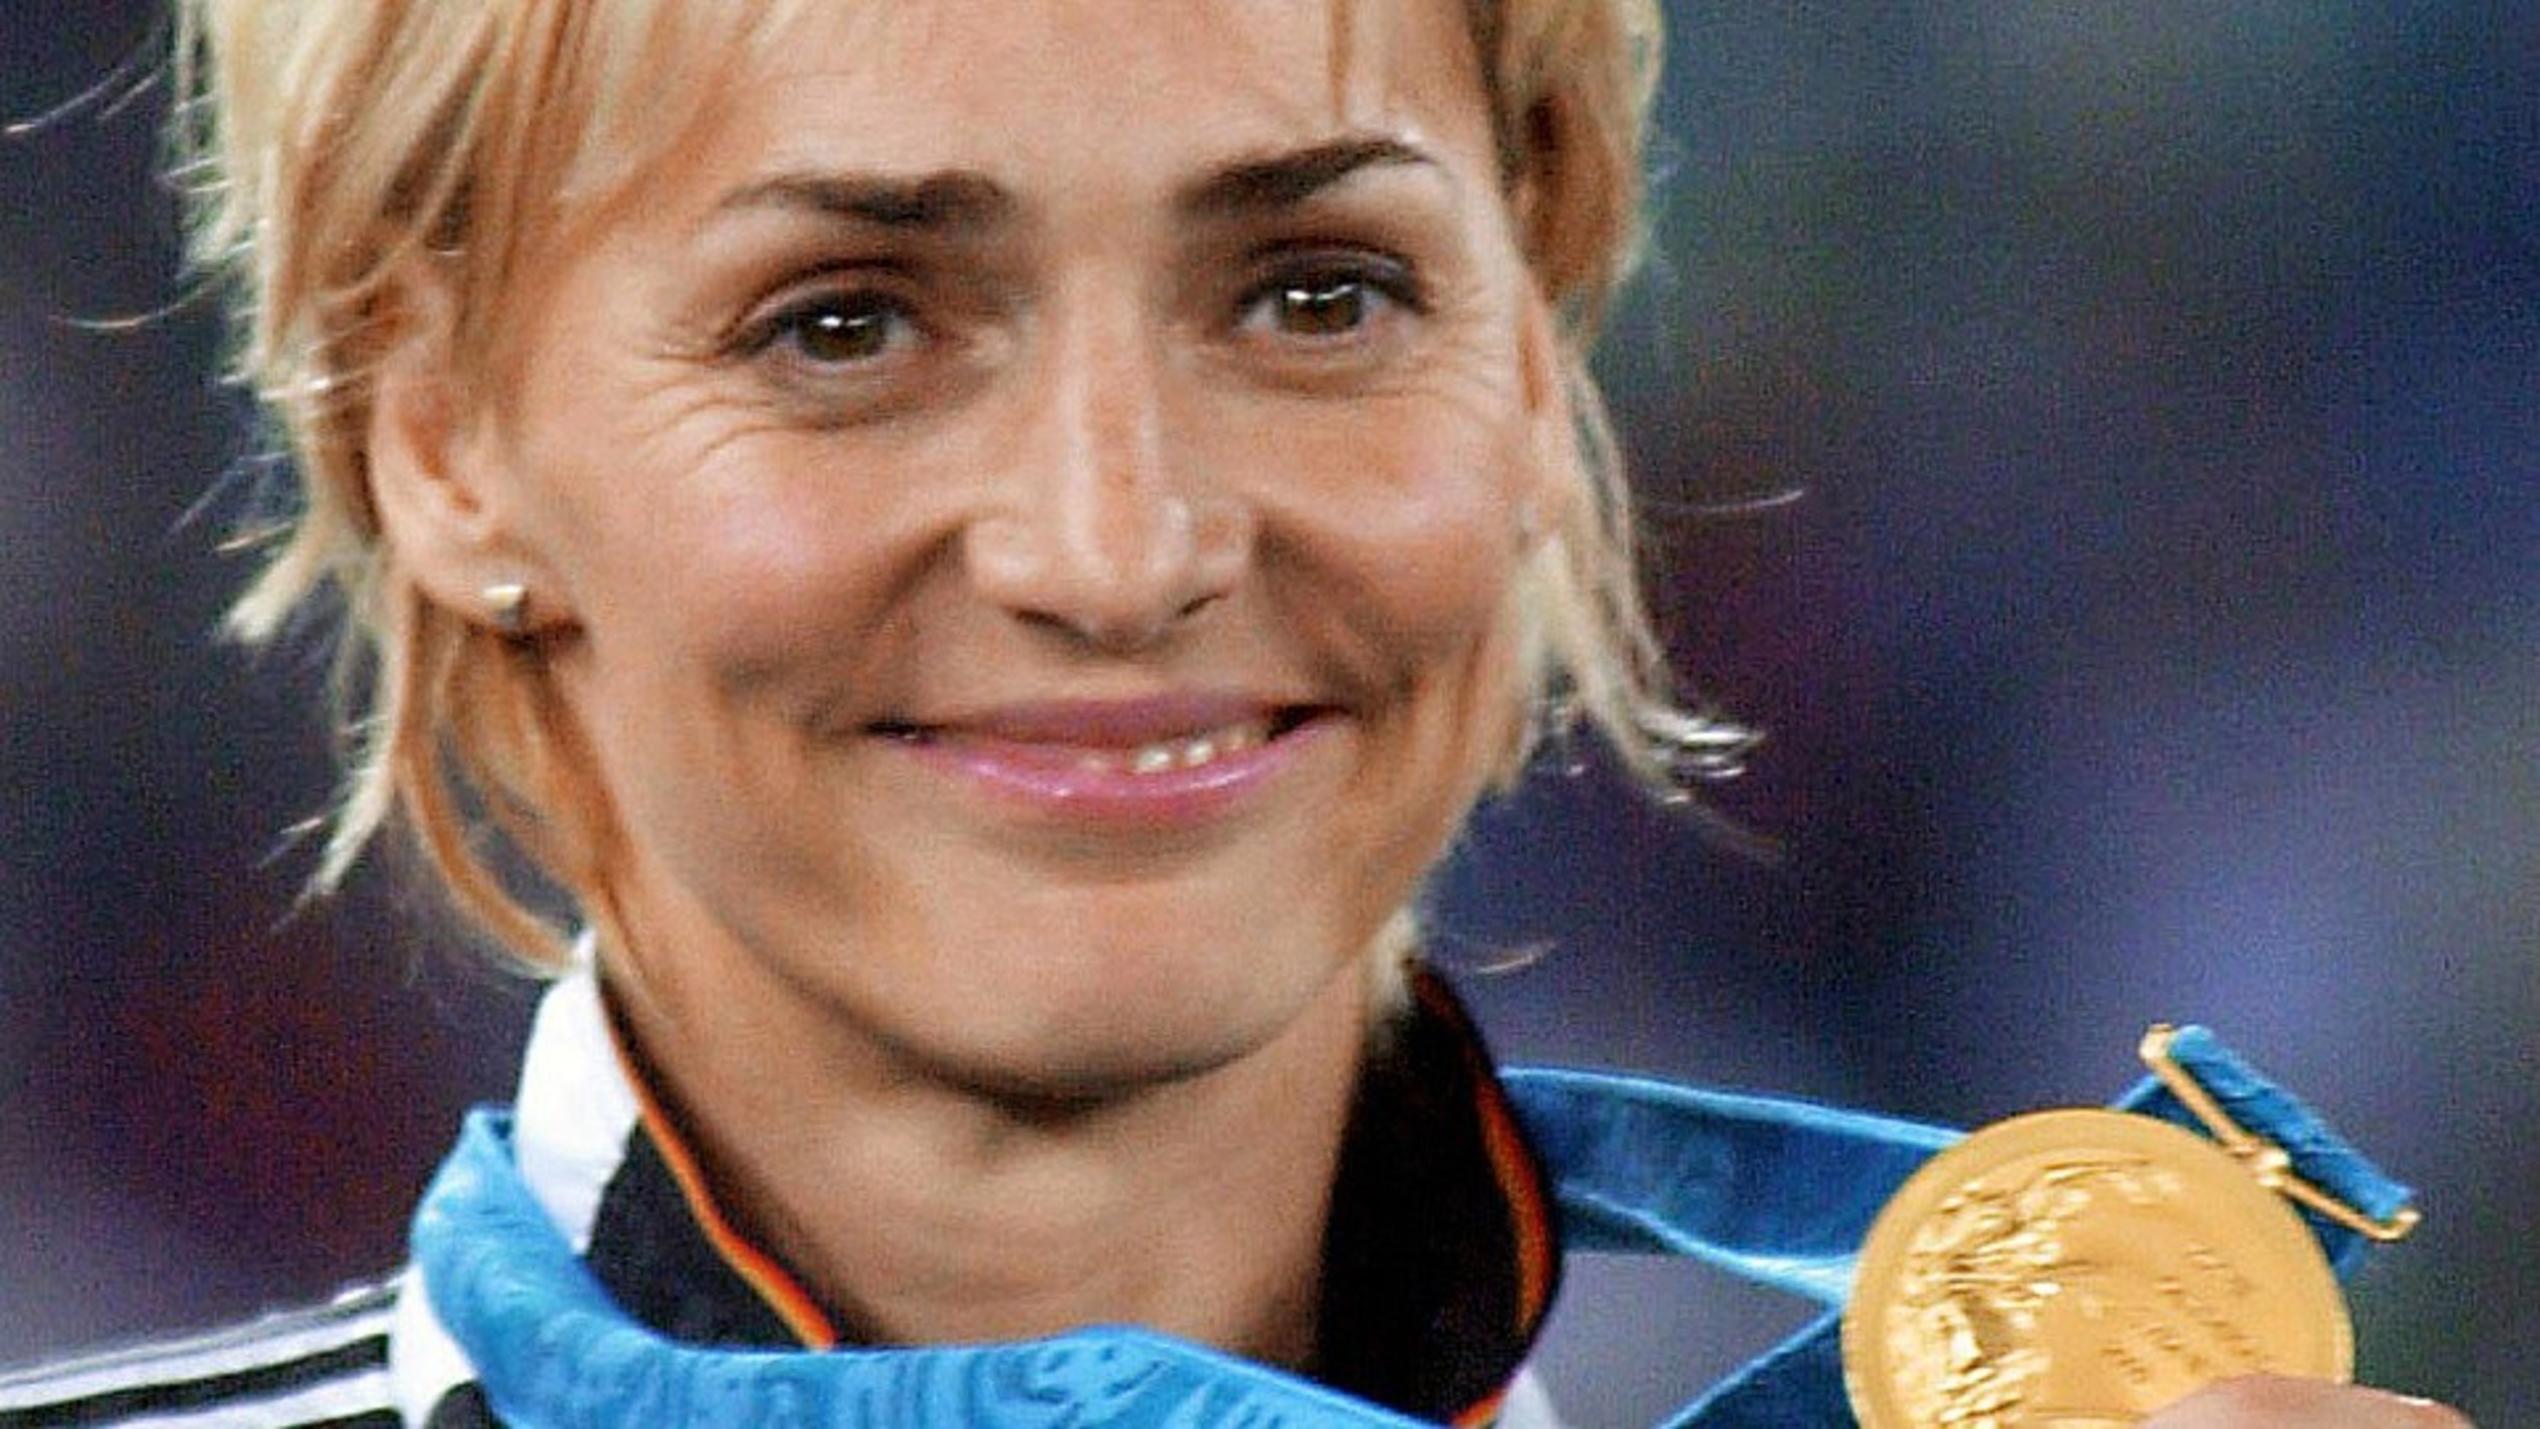 Ewige Helden: Heike Drechsler ist die jüngste Weitsprung-Weltmeisterin aller Zeiten